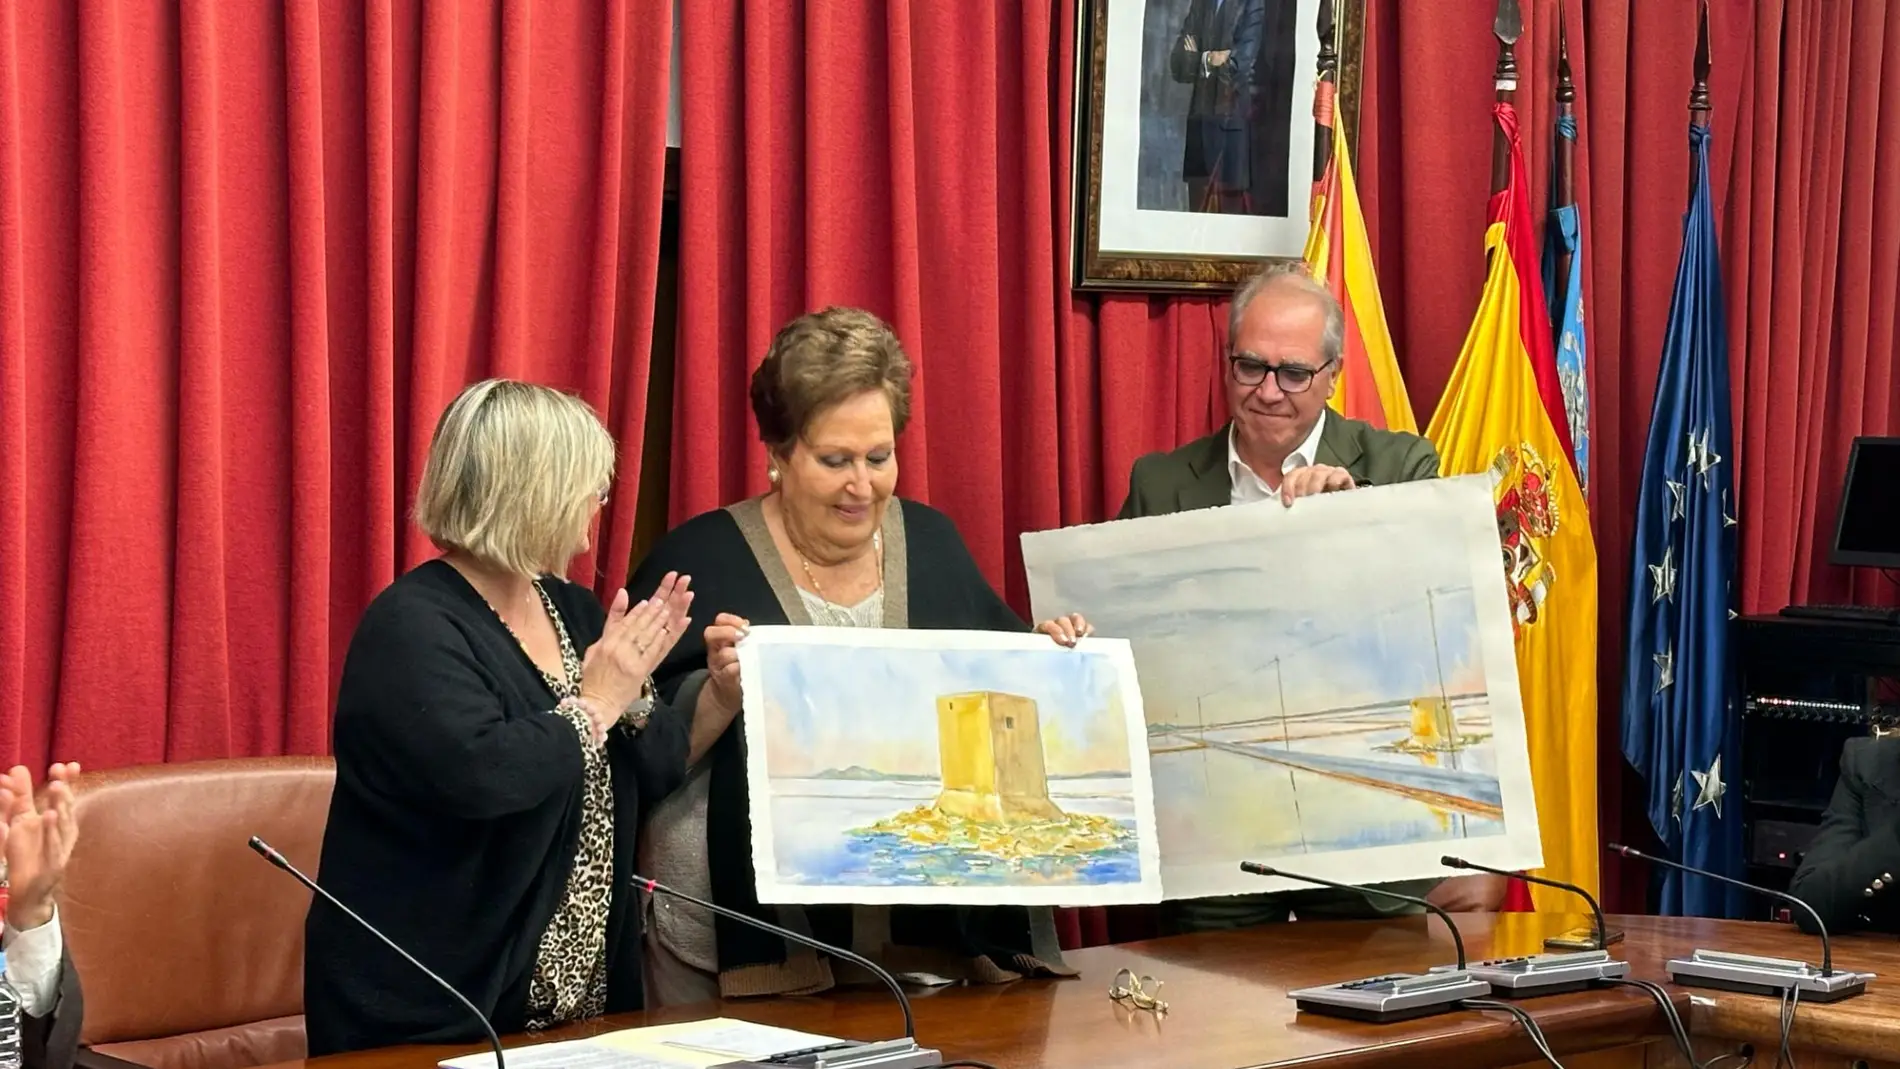 La alcaldesa de Santa Pola entrega a la viuda de Miguel Cuervo-Arango las dos láminas del artista Juan Ródenas Cerdá sobre las Salinas.